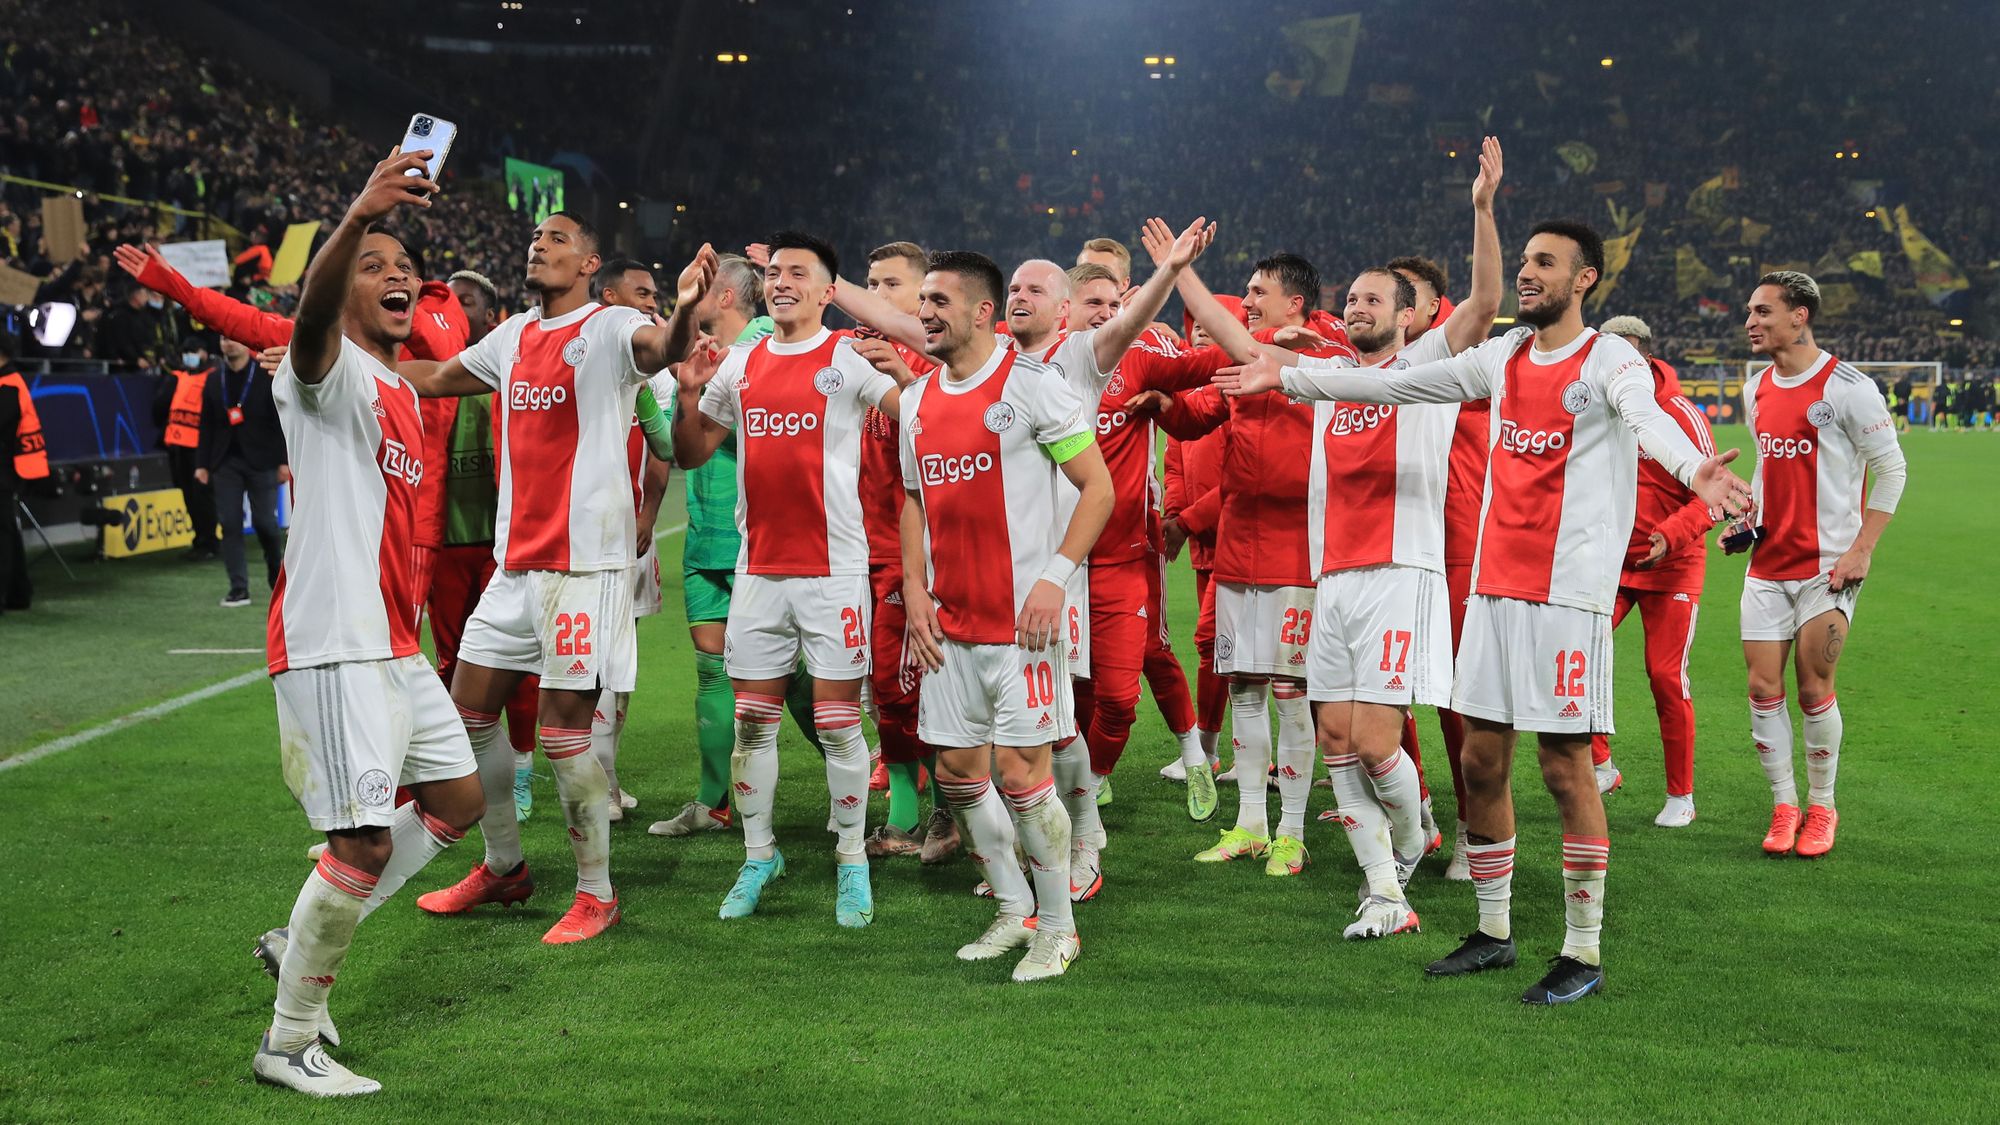 Noche soñada de Ajax y Haller en Dortmund; remontada y a octavos de la Champions League